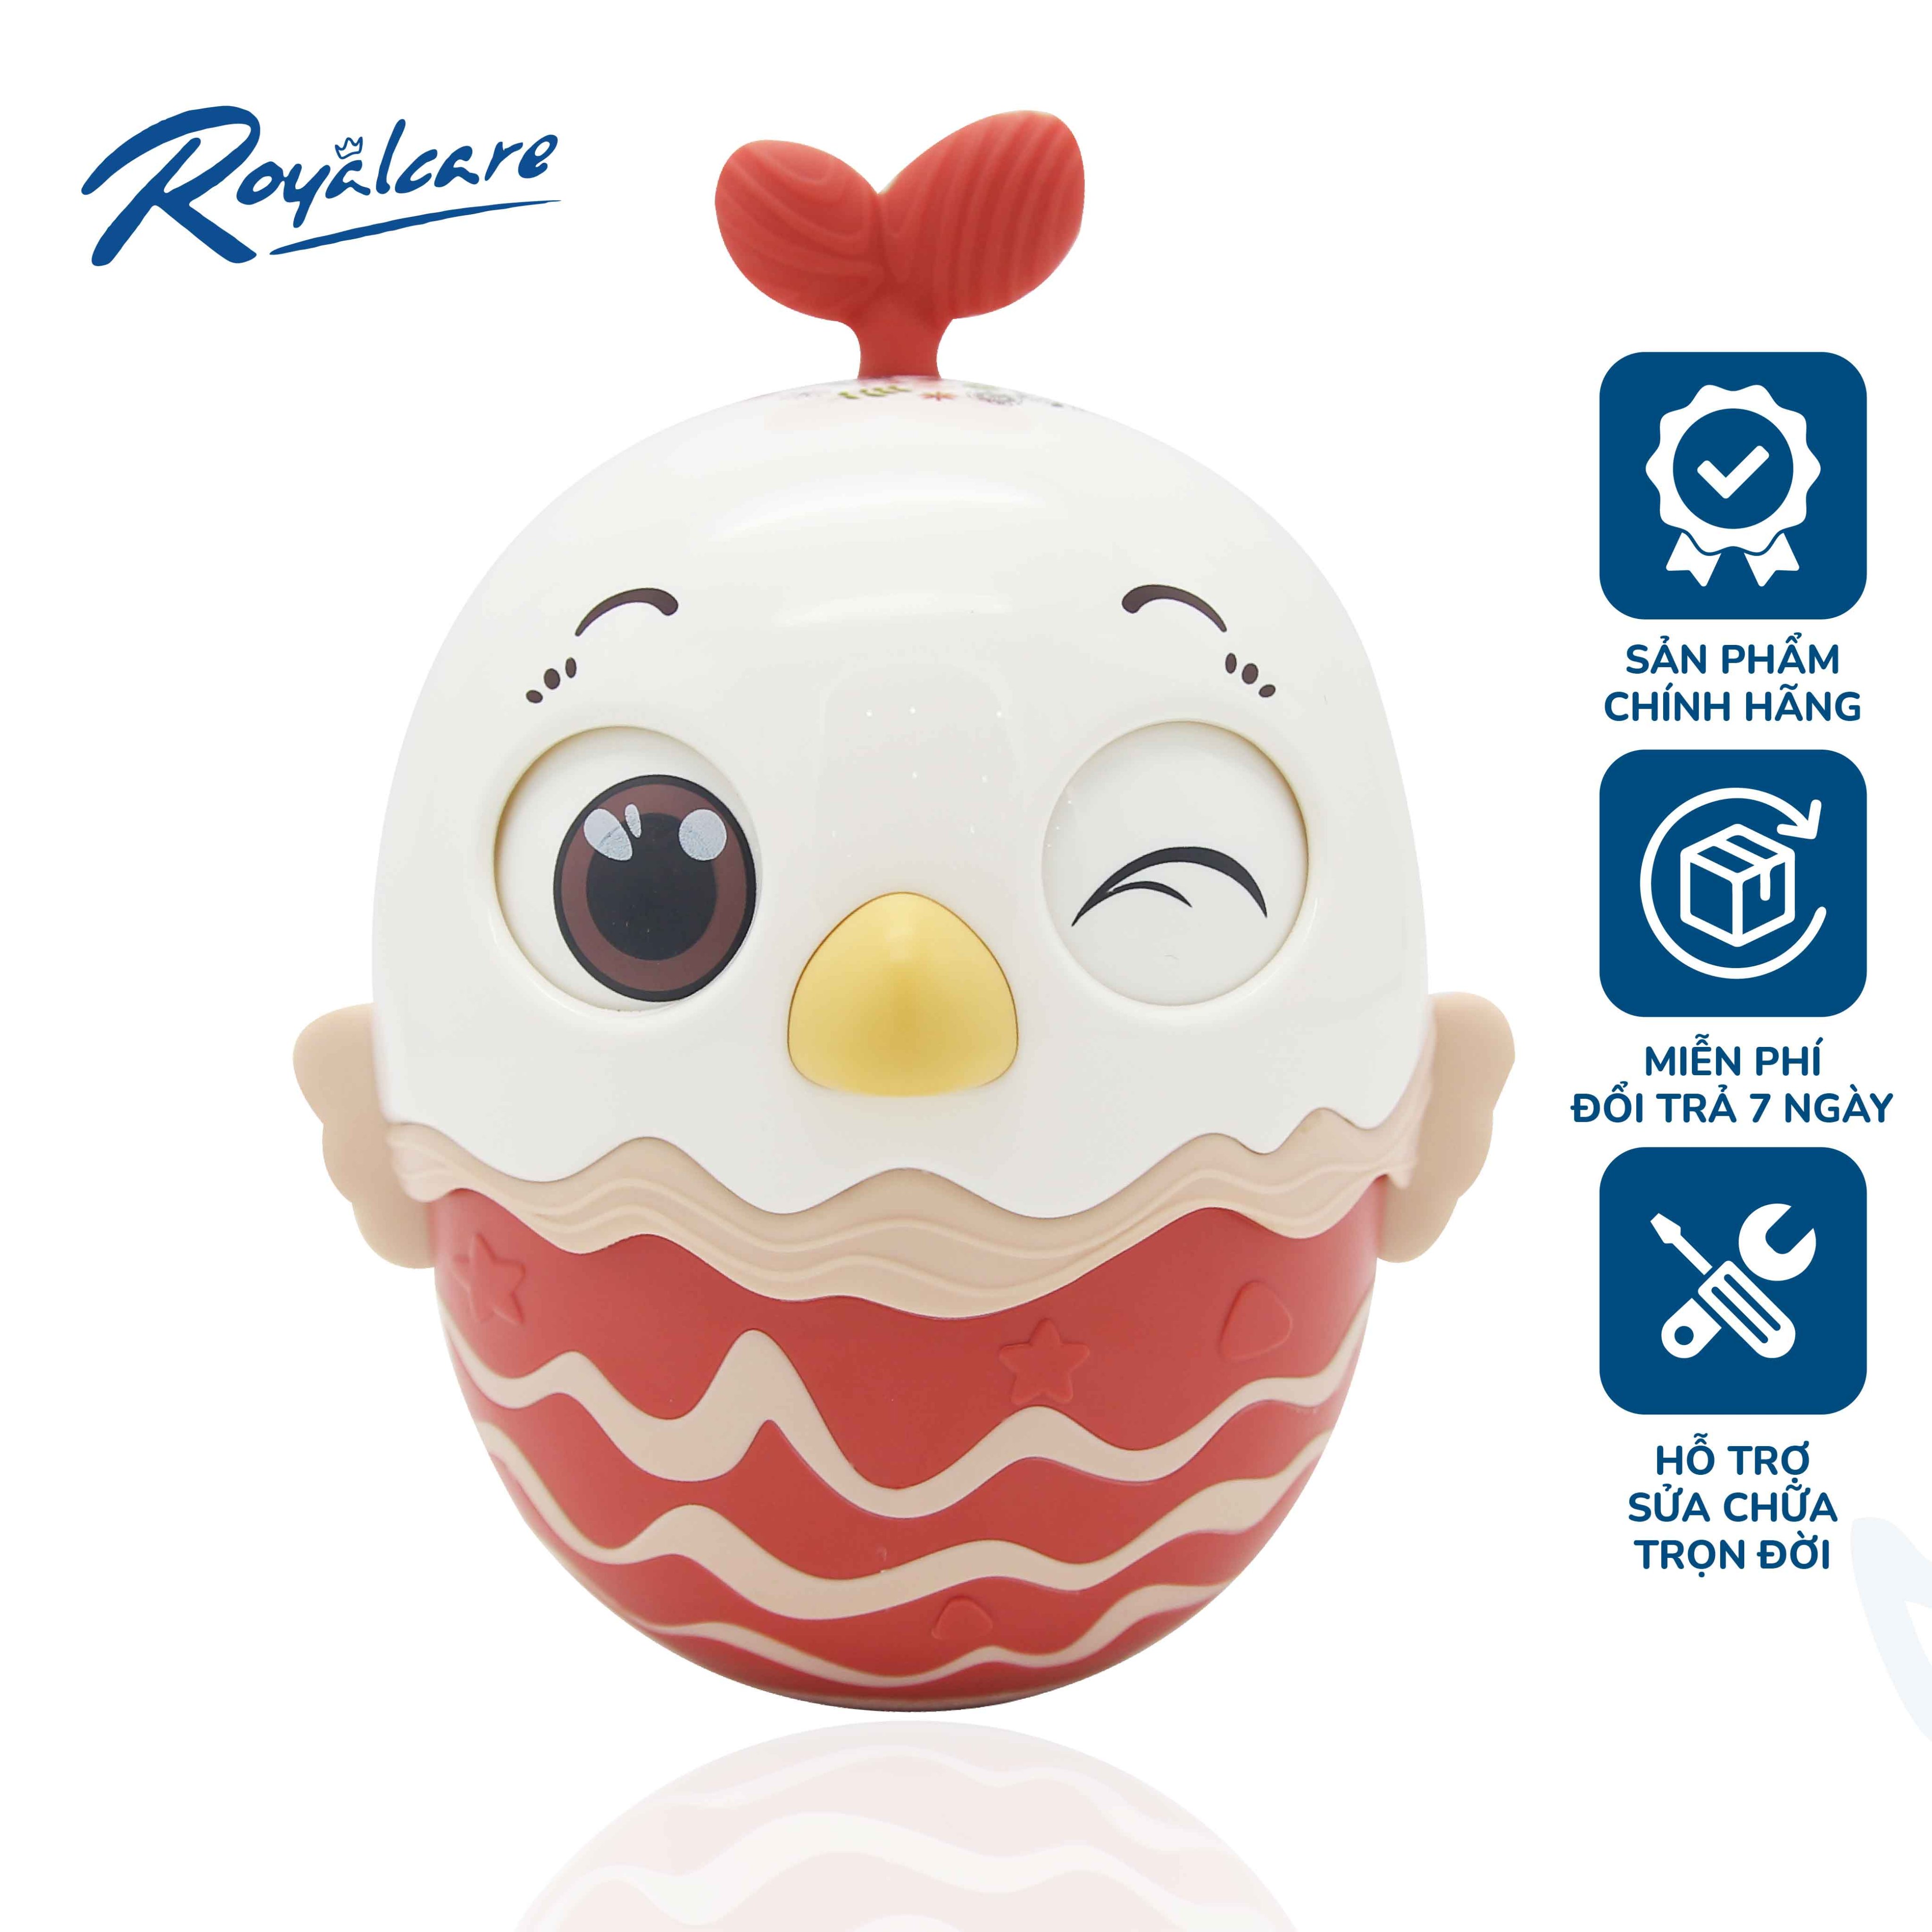 Đồ chơi lật đật cho bé hình quả trứng dễ thương kêu leng keng  Royalcare 0820-RC-822-222 - đồ decor trang trí phòng bé